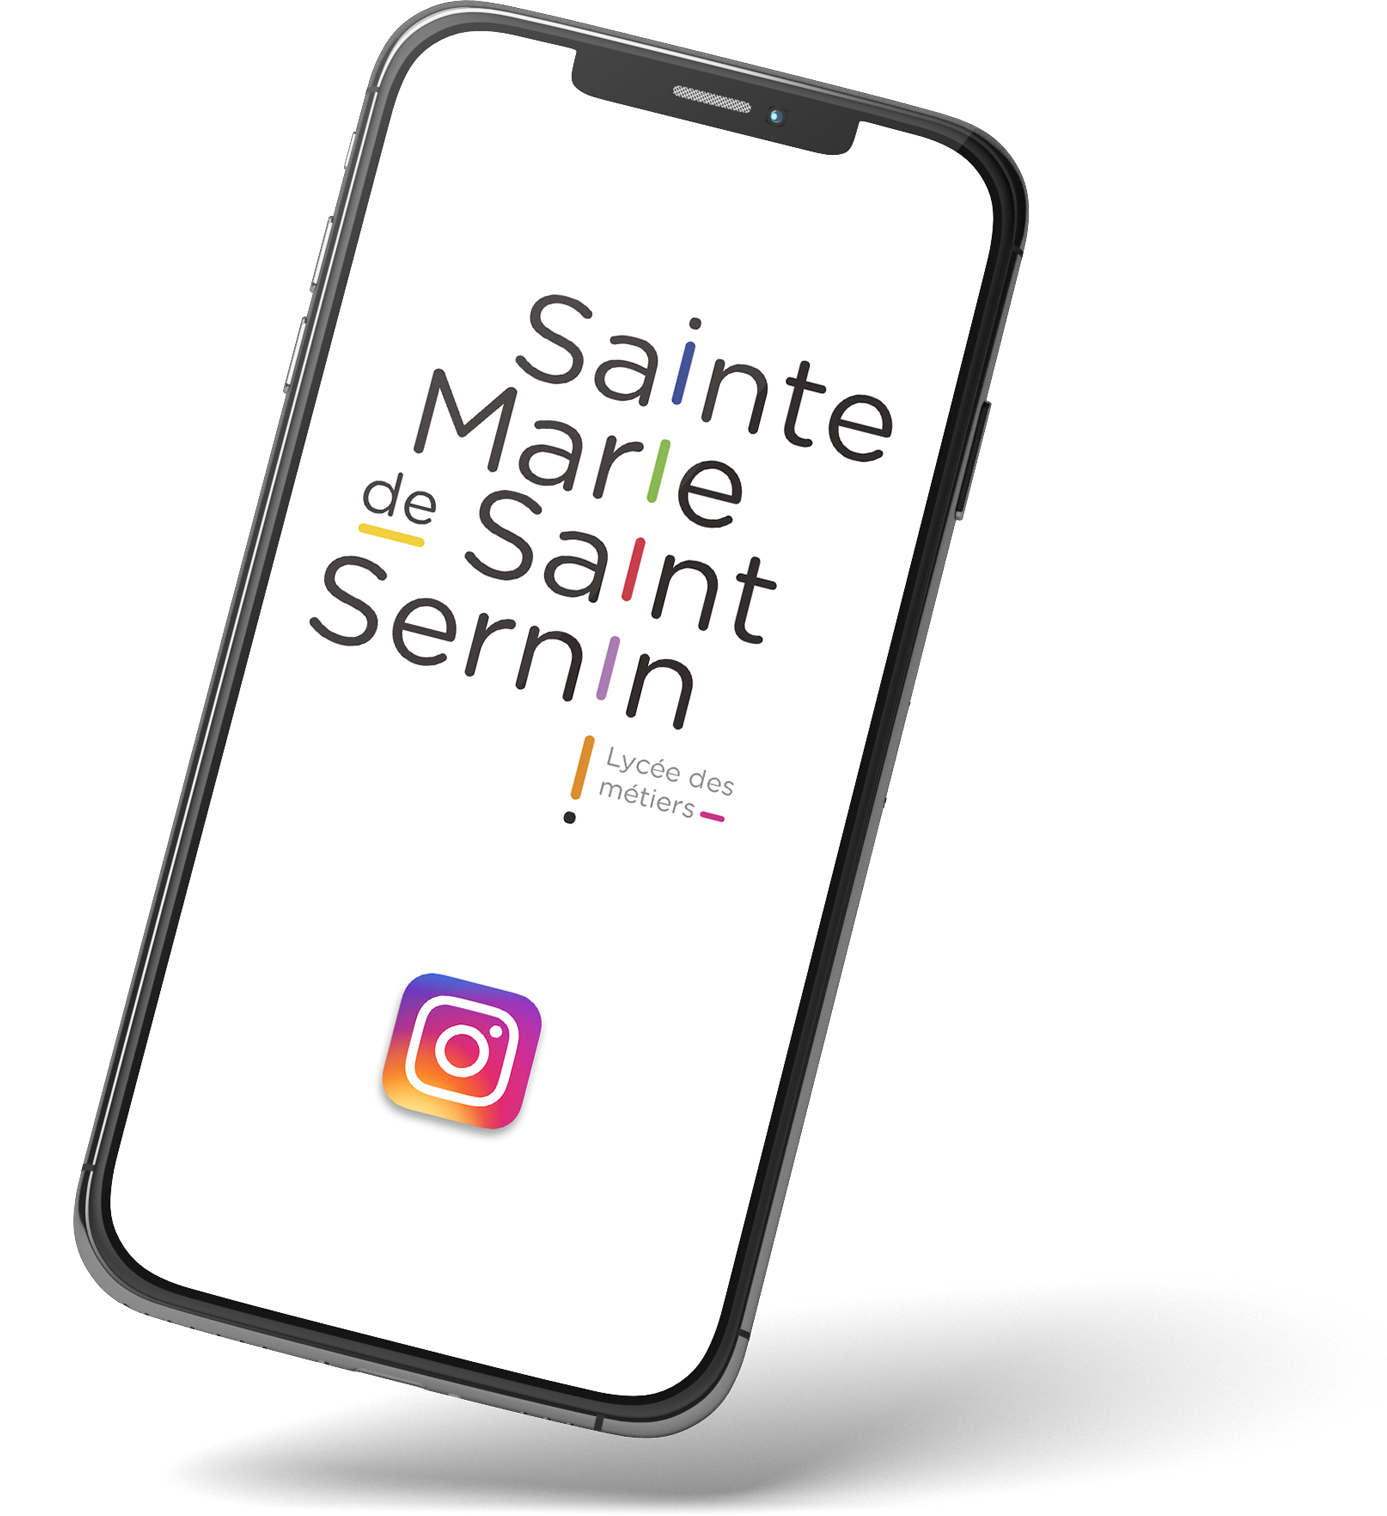 (c) Saintemarie-saintsernin.com